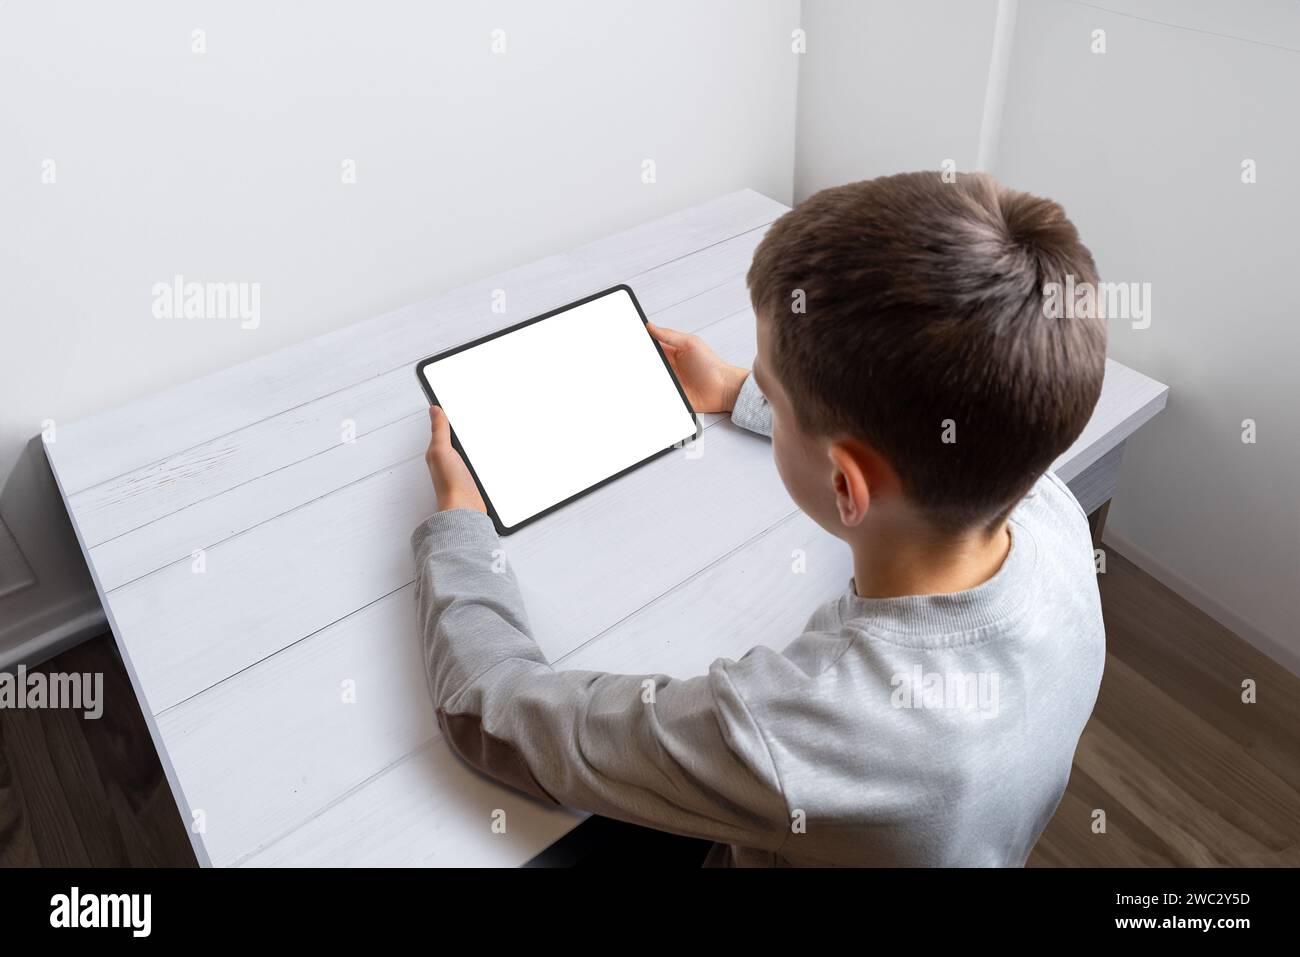 Boy Hold Tablet mit isoliertem Bildschirm für Spiel- oder App-Werbung auf einem aufgeräumten Schreibtisch. Perfekt für digitale Unterhaltung und Bildungsanwendungen Stockfoto